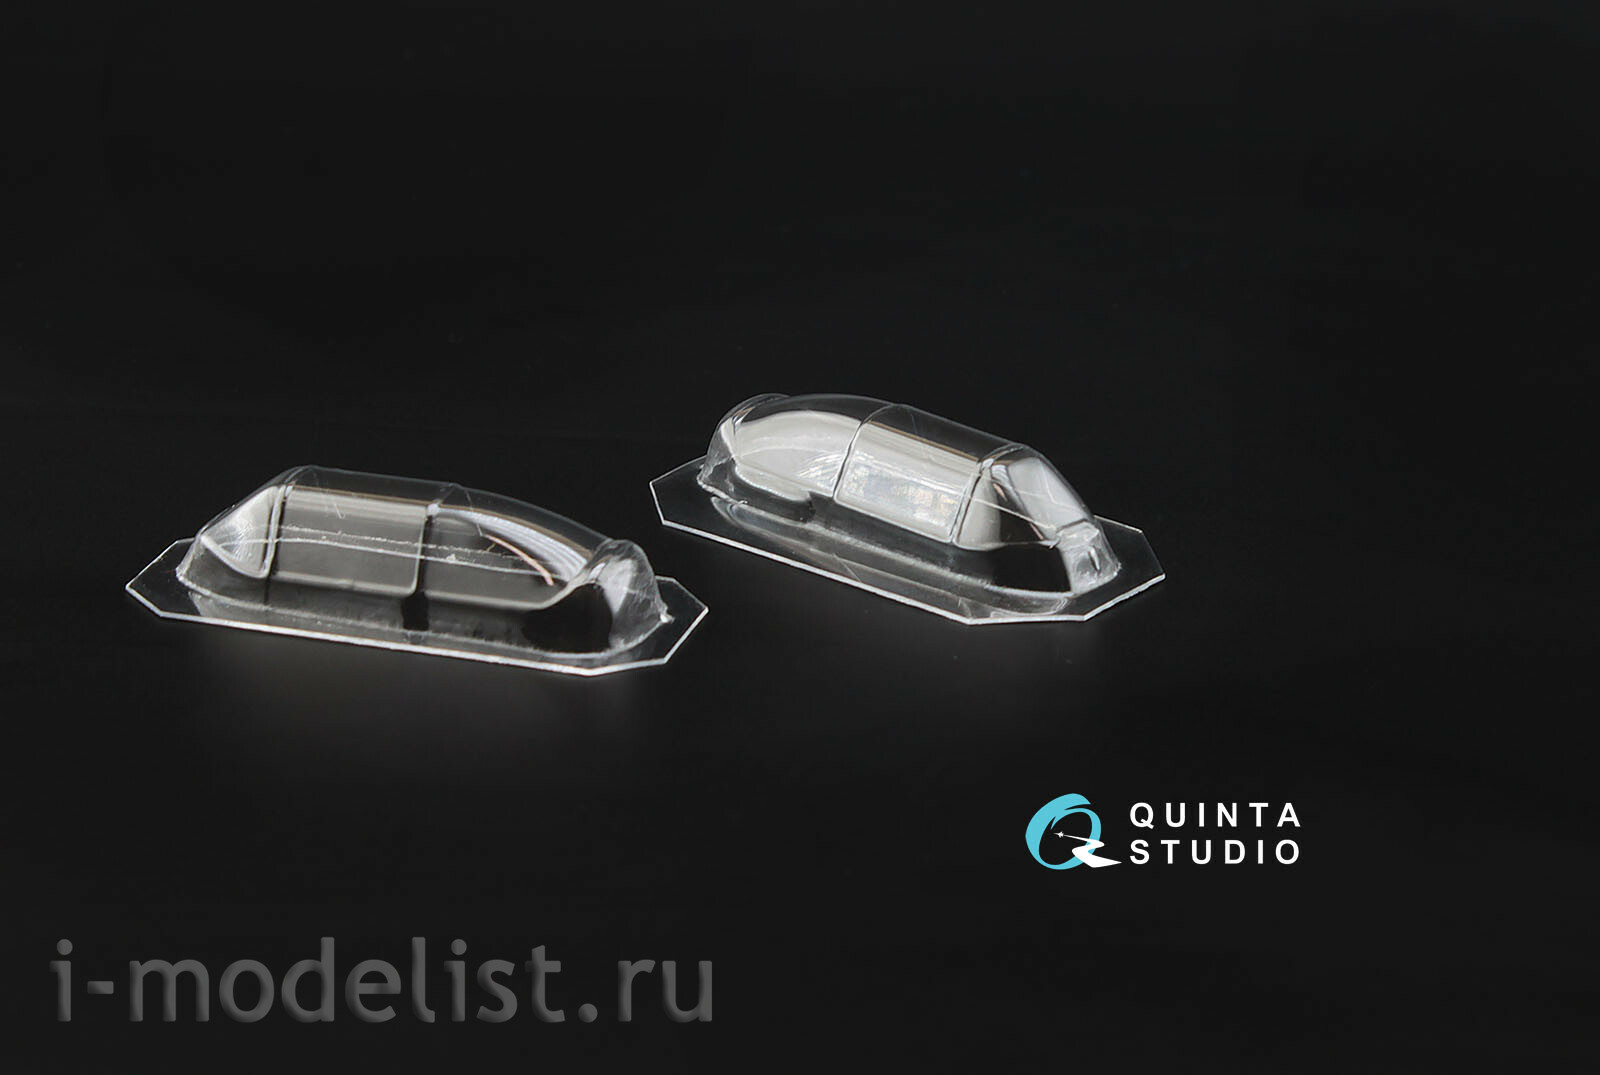 QC48001-S Quinta Studio 1/35 Glazing set for the model Zvezda 